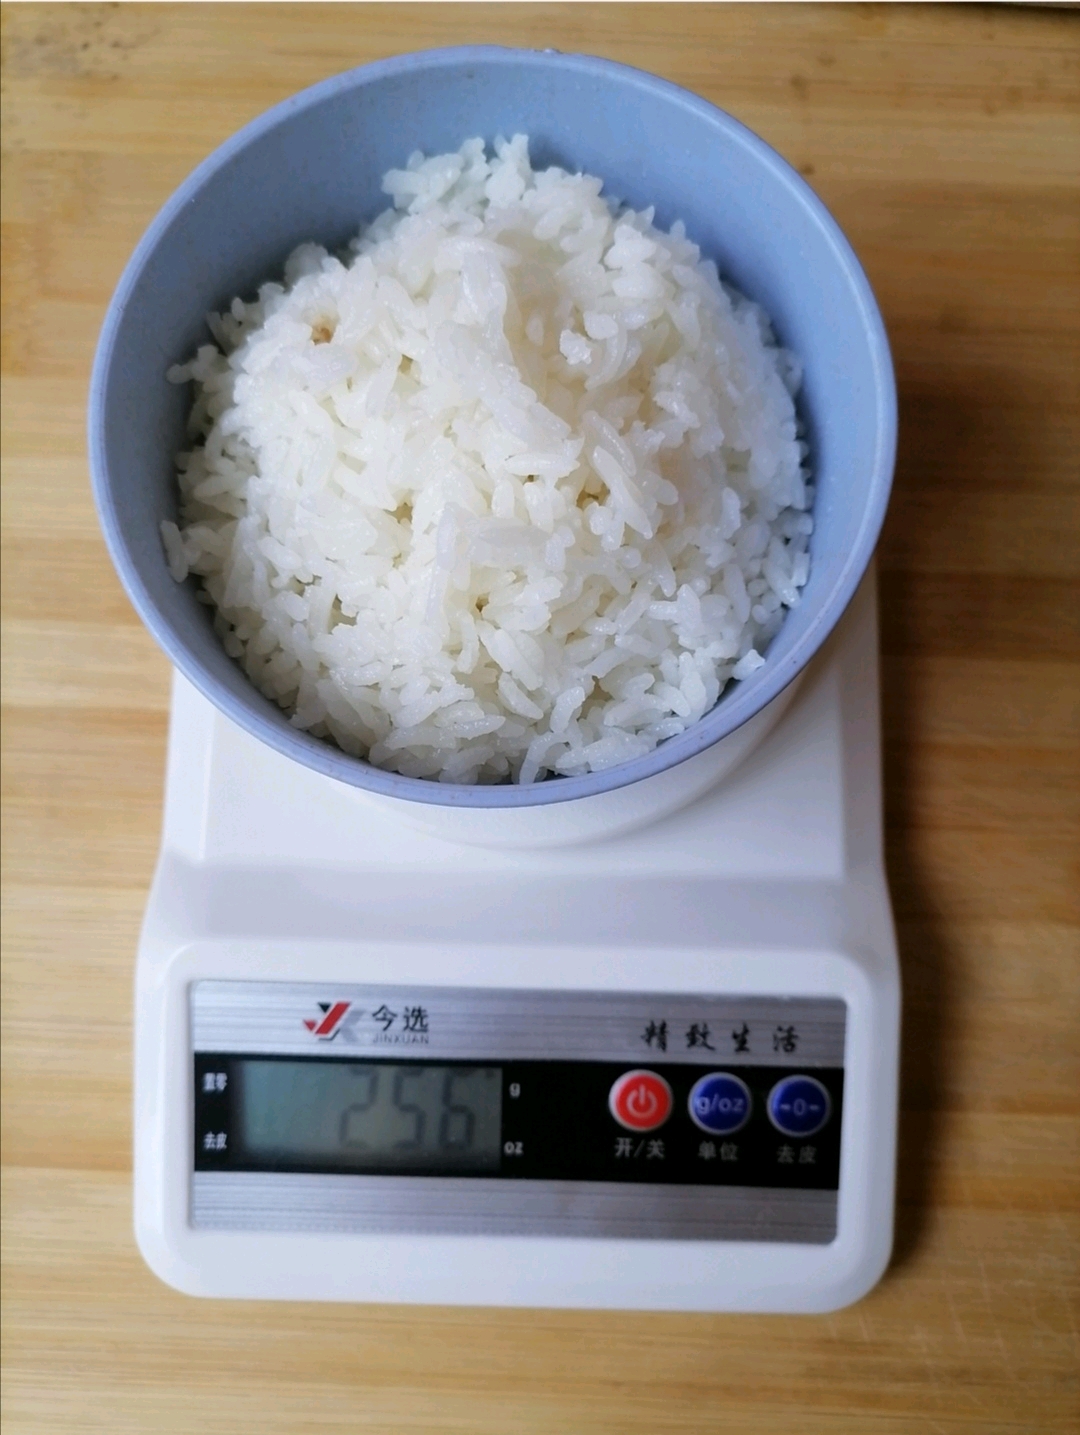 100g的米饭有多少?